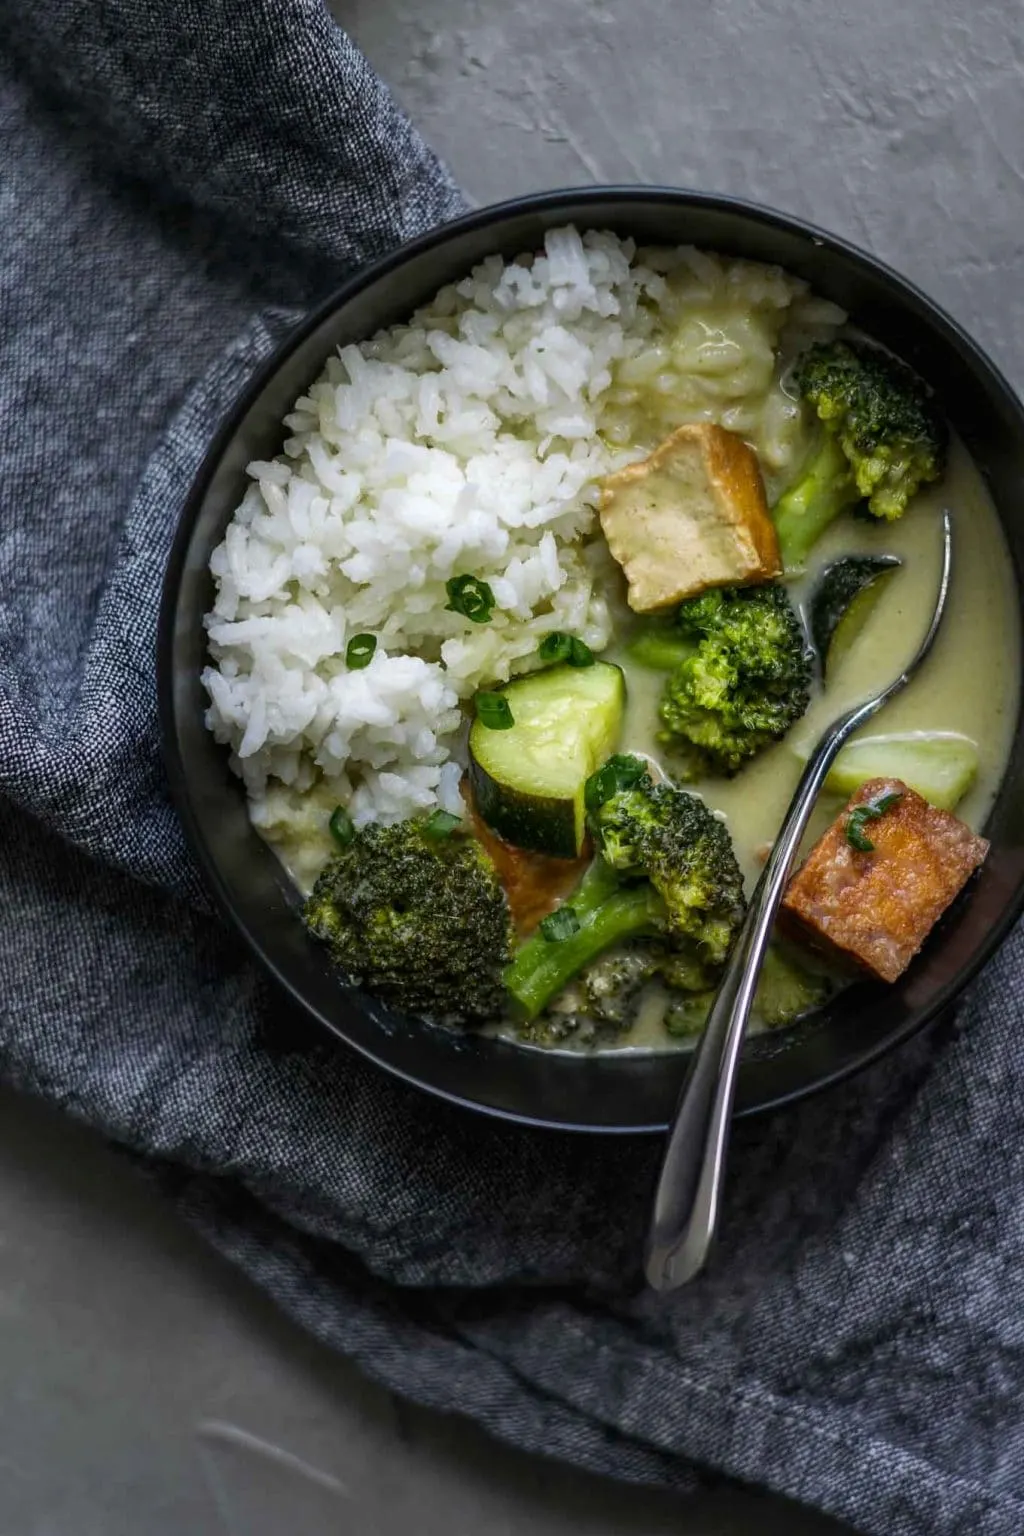 Vegan Thai Green Curry with Tofu